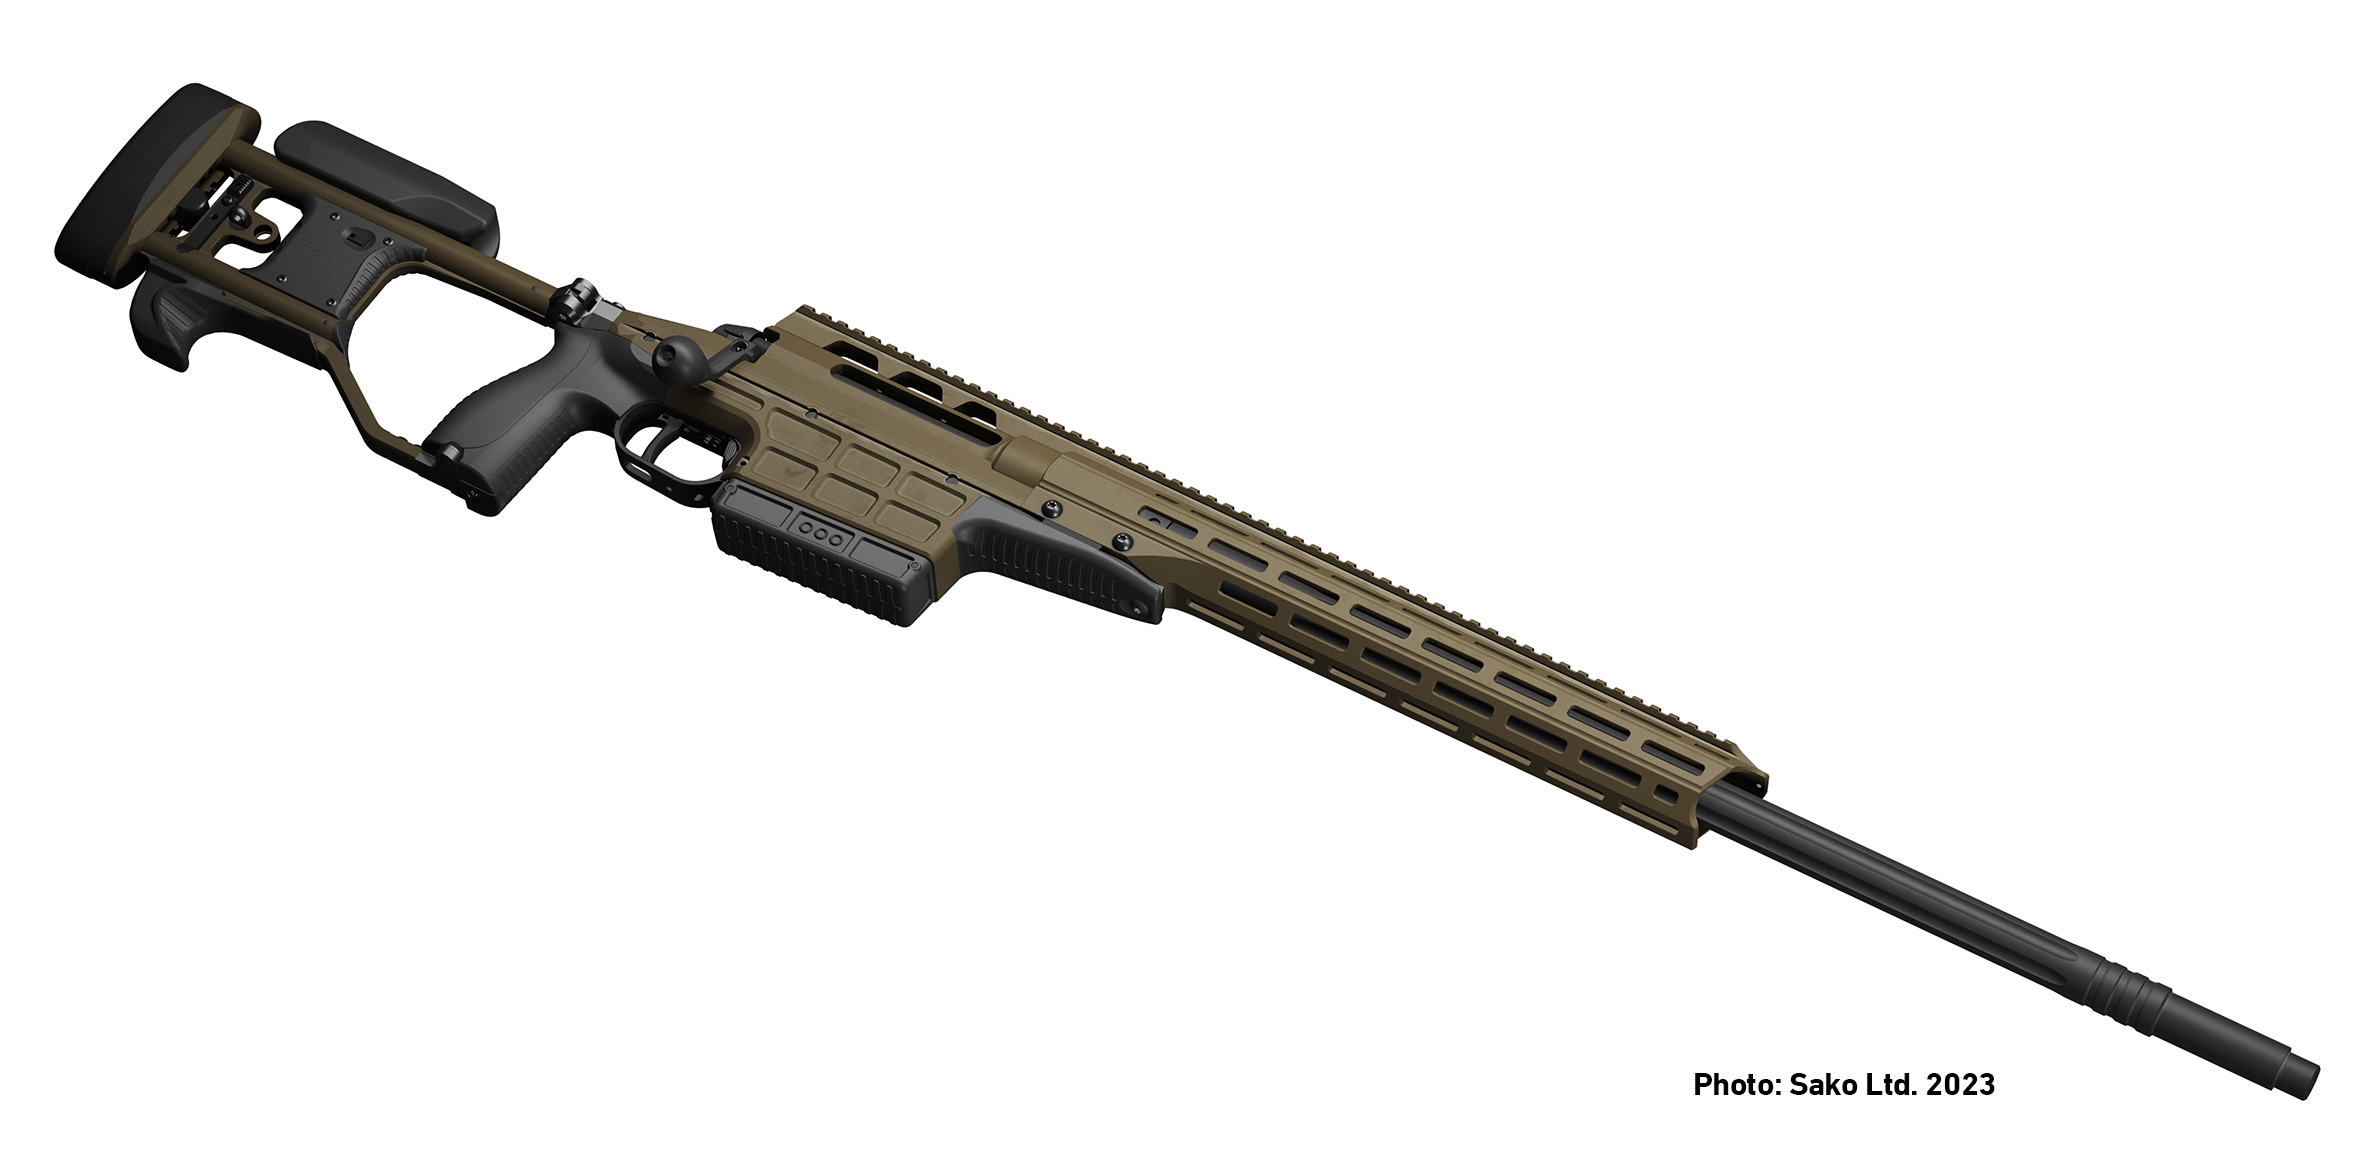 TRG M10 .338 Lapua Mag sniper rifle